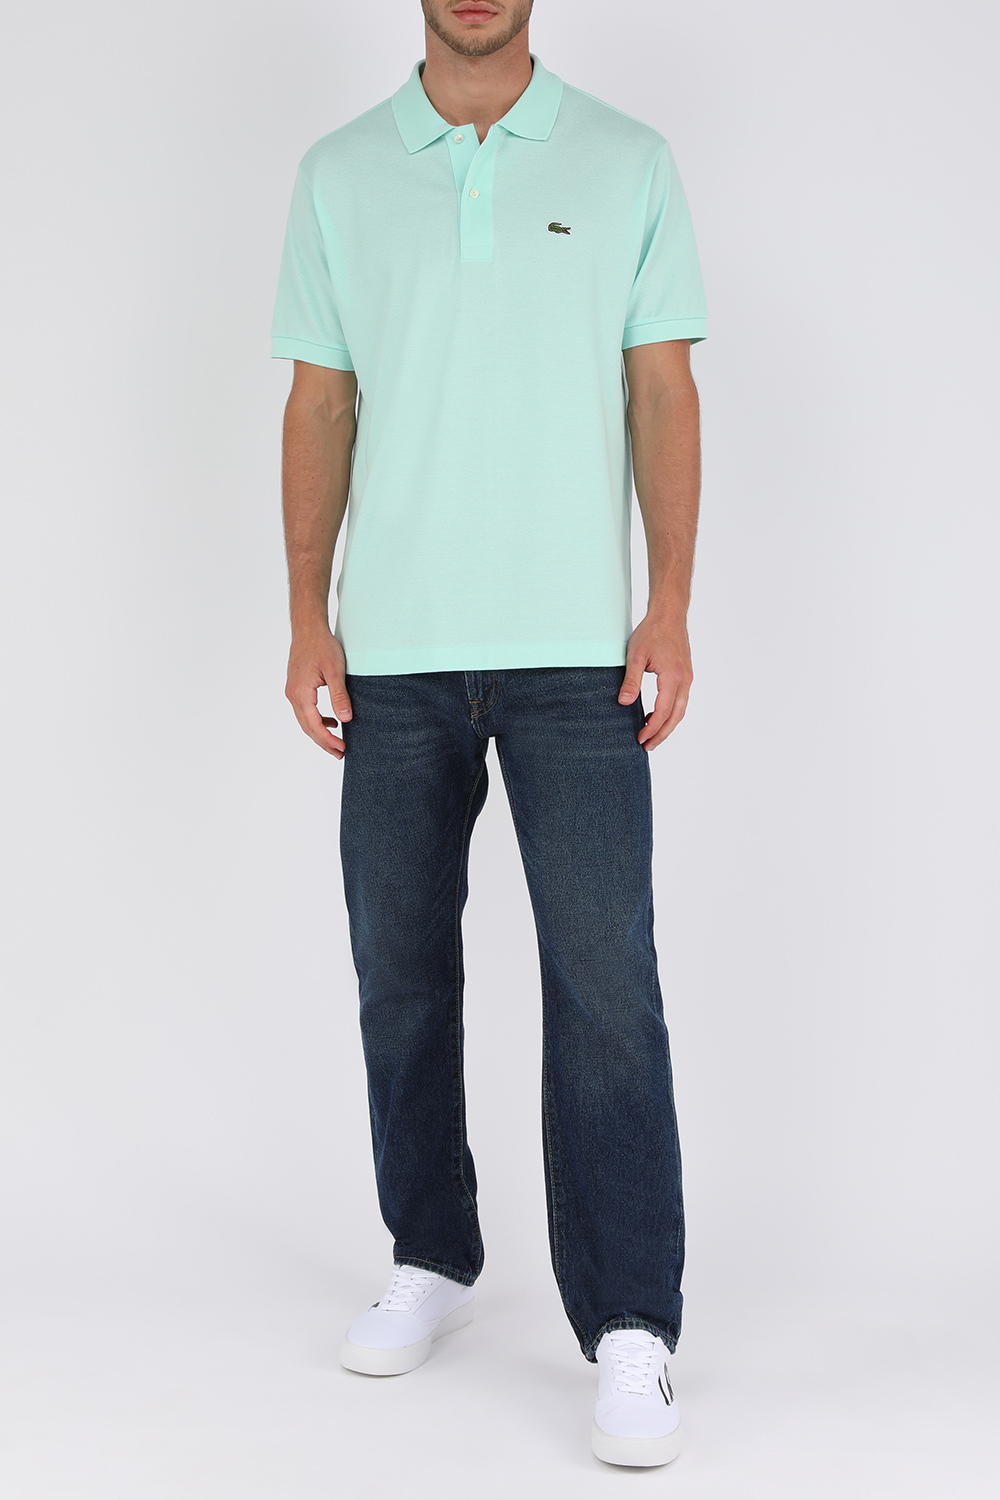 חולצת פולו בגוון תכלת-ירקרק עם לוגו LACOSTE